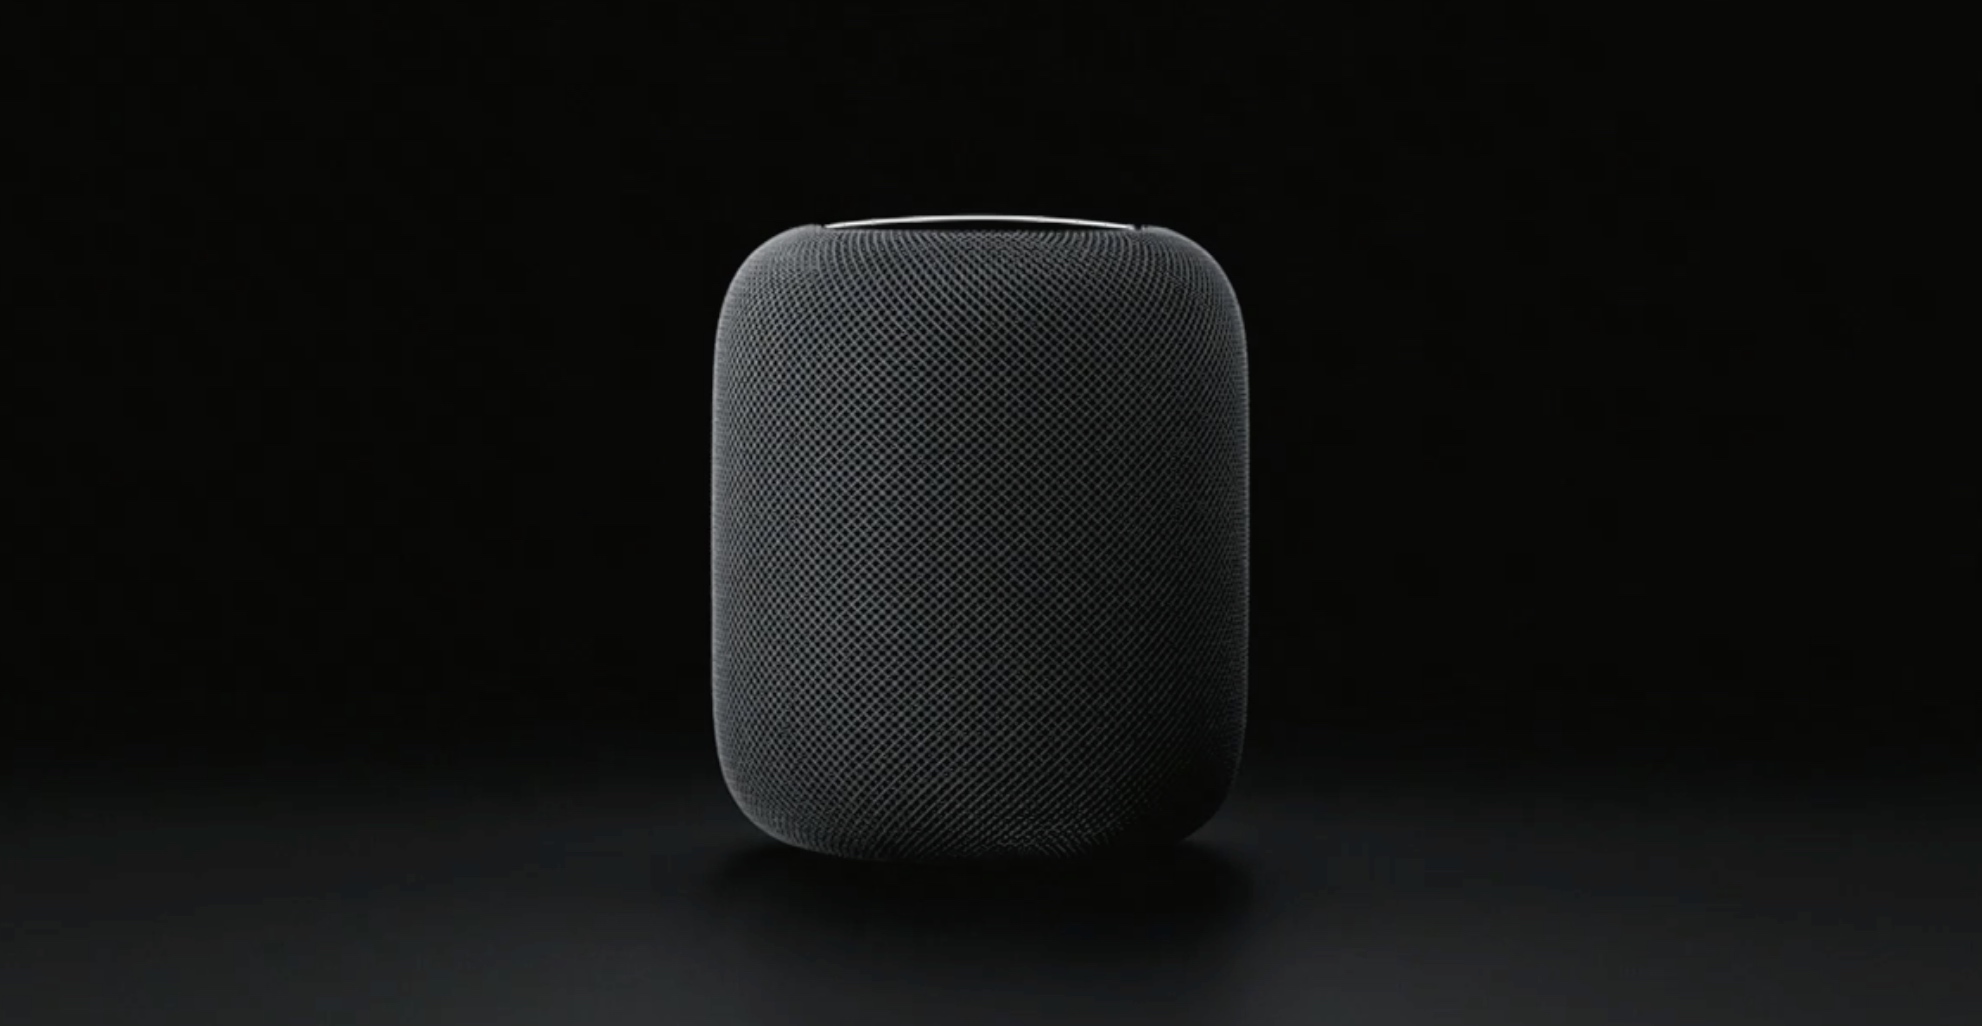 Avec HomePod, Apple a voulu se rapprocher d’un design renvoyant à l’univers de la hi-fi plus qu'à celui du gadget électronique. © Apple